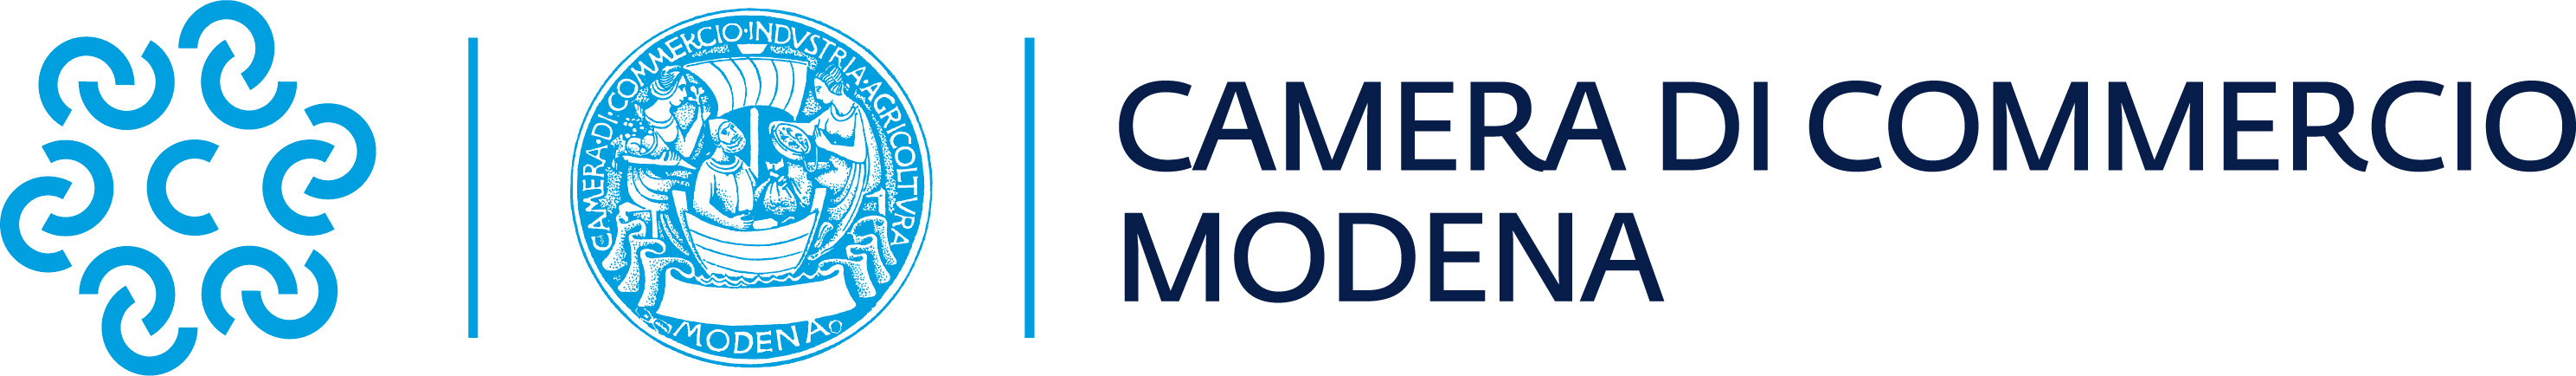 Logo Camera di Commercio Modena new